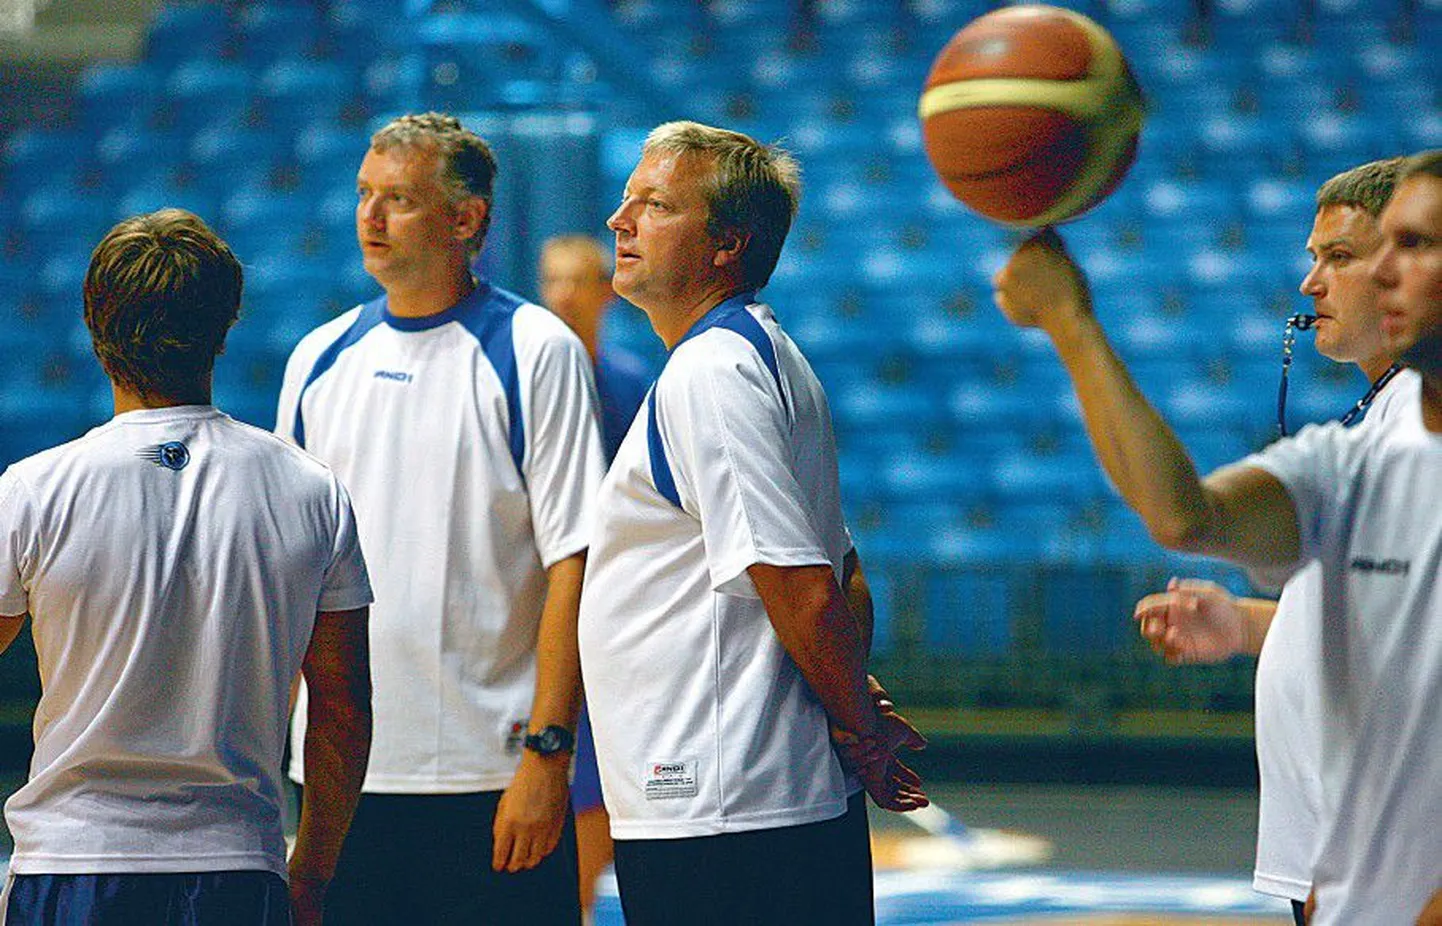 Eesti koondise peatreener Tiit Sokk  (keskel) seisab koos abilistega raske valiku ees, keda tuleval suvel koondisse kutsuda ja keda välja jätta.